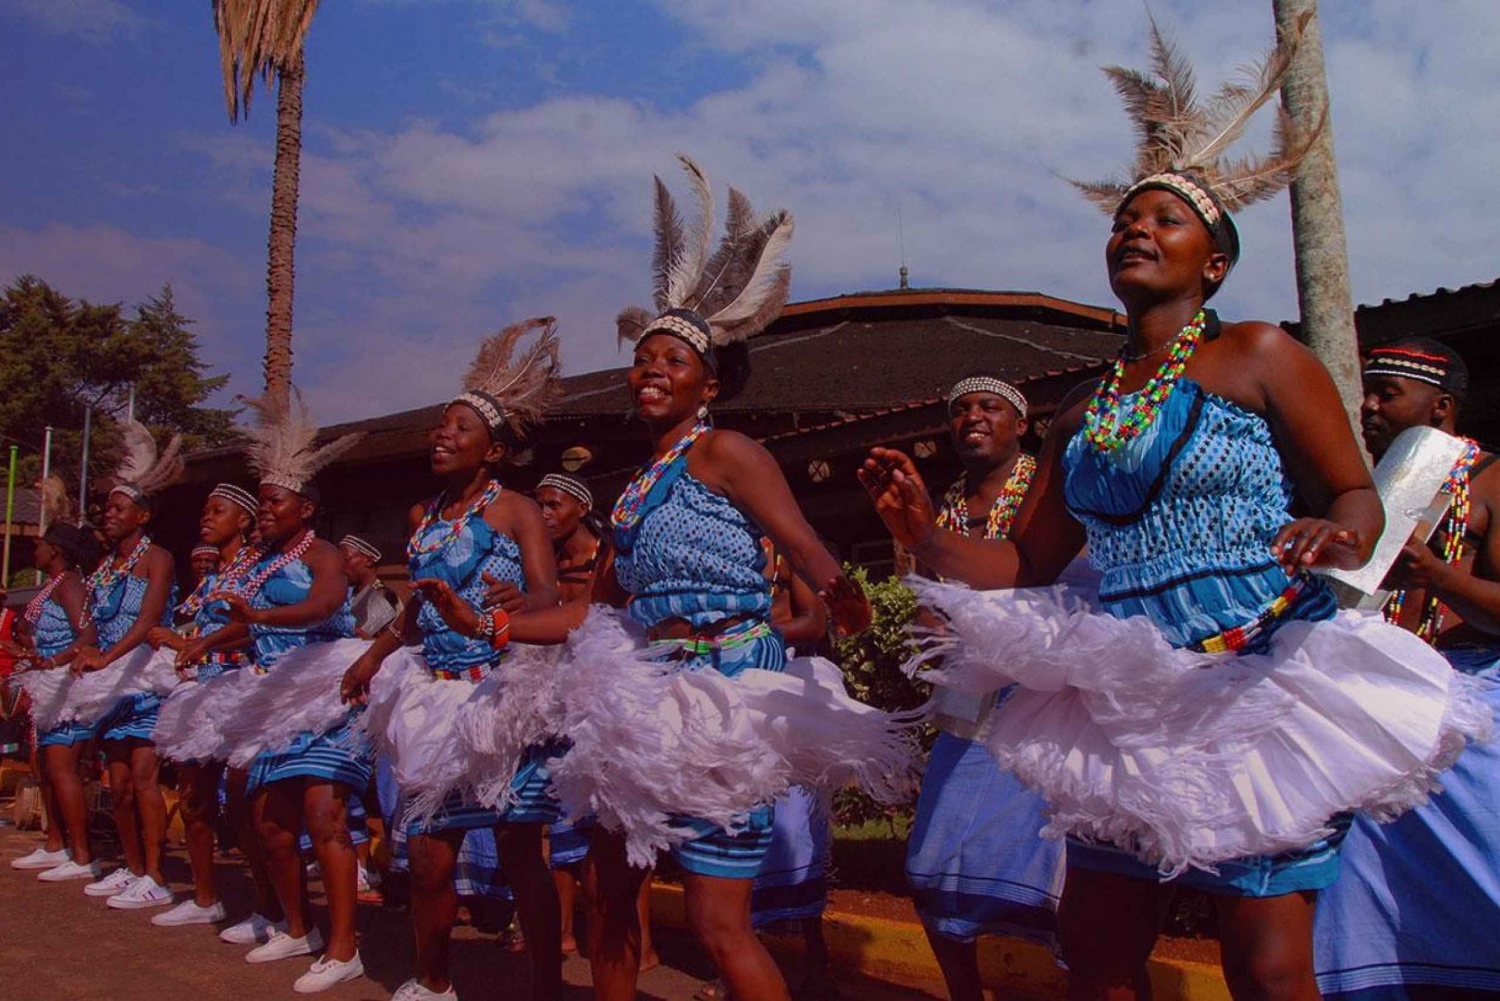 Passeio cultural em Bomas of Kenya